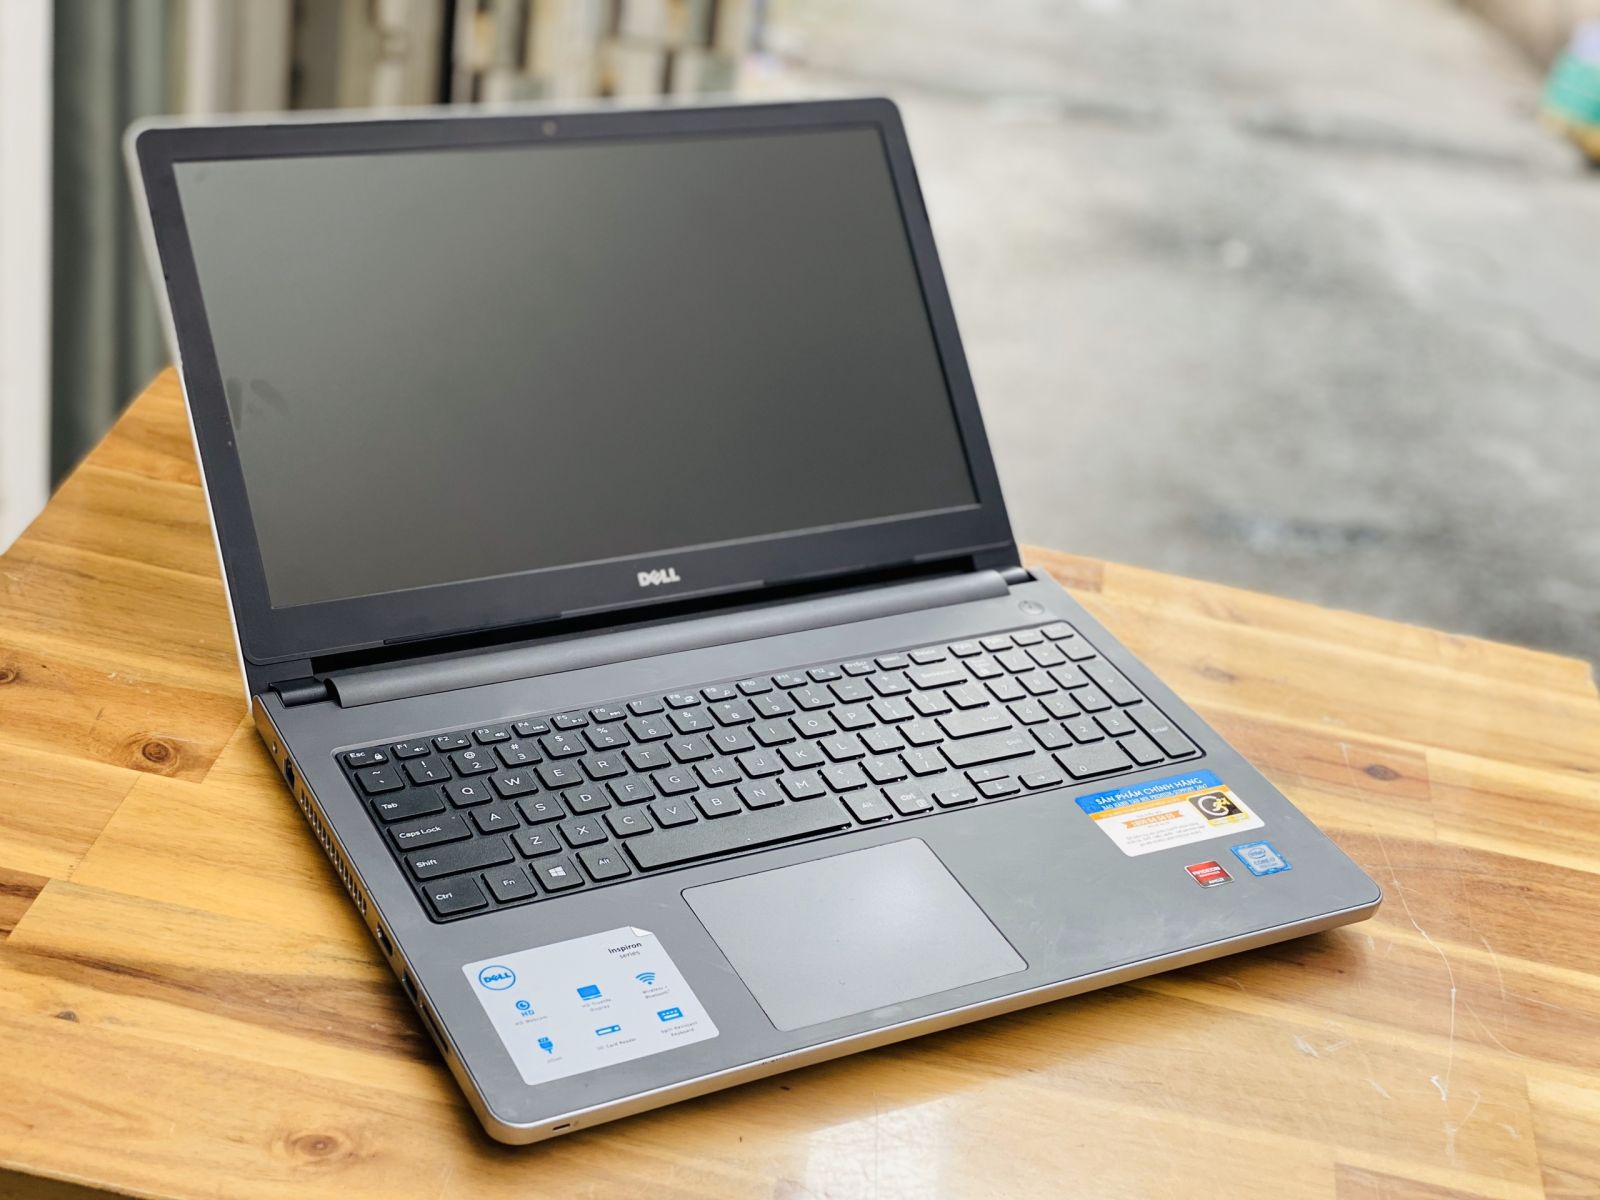 Laptop Dell Inspiron 5559, i7 6500U 8G SSD240 Vga rời 4G Đẹp zin 100% - 1